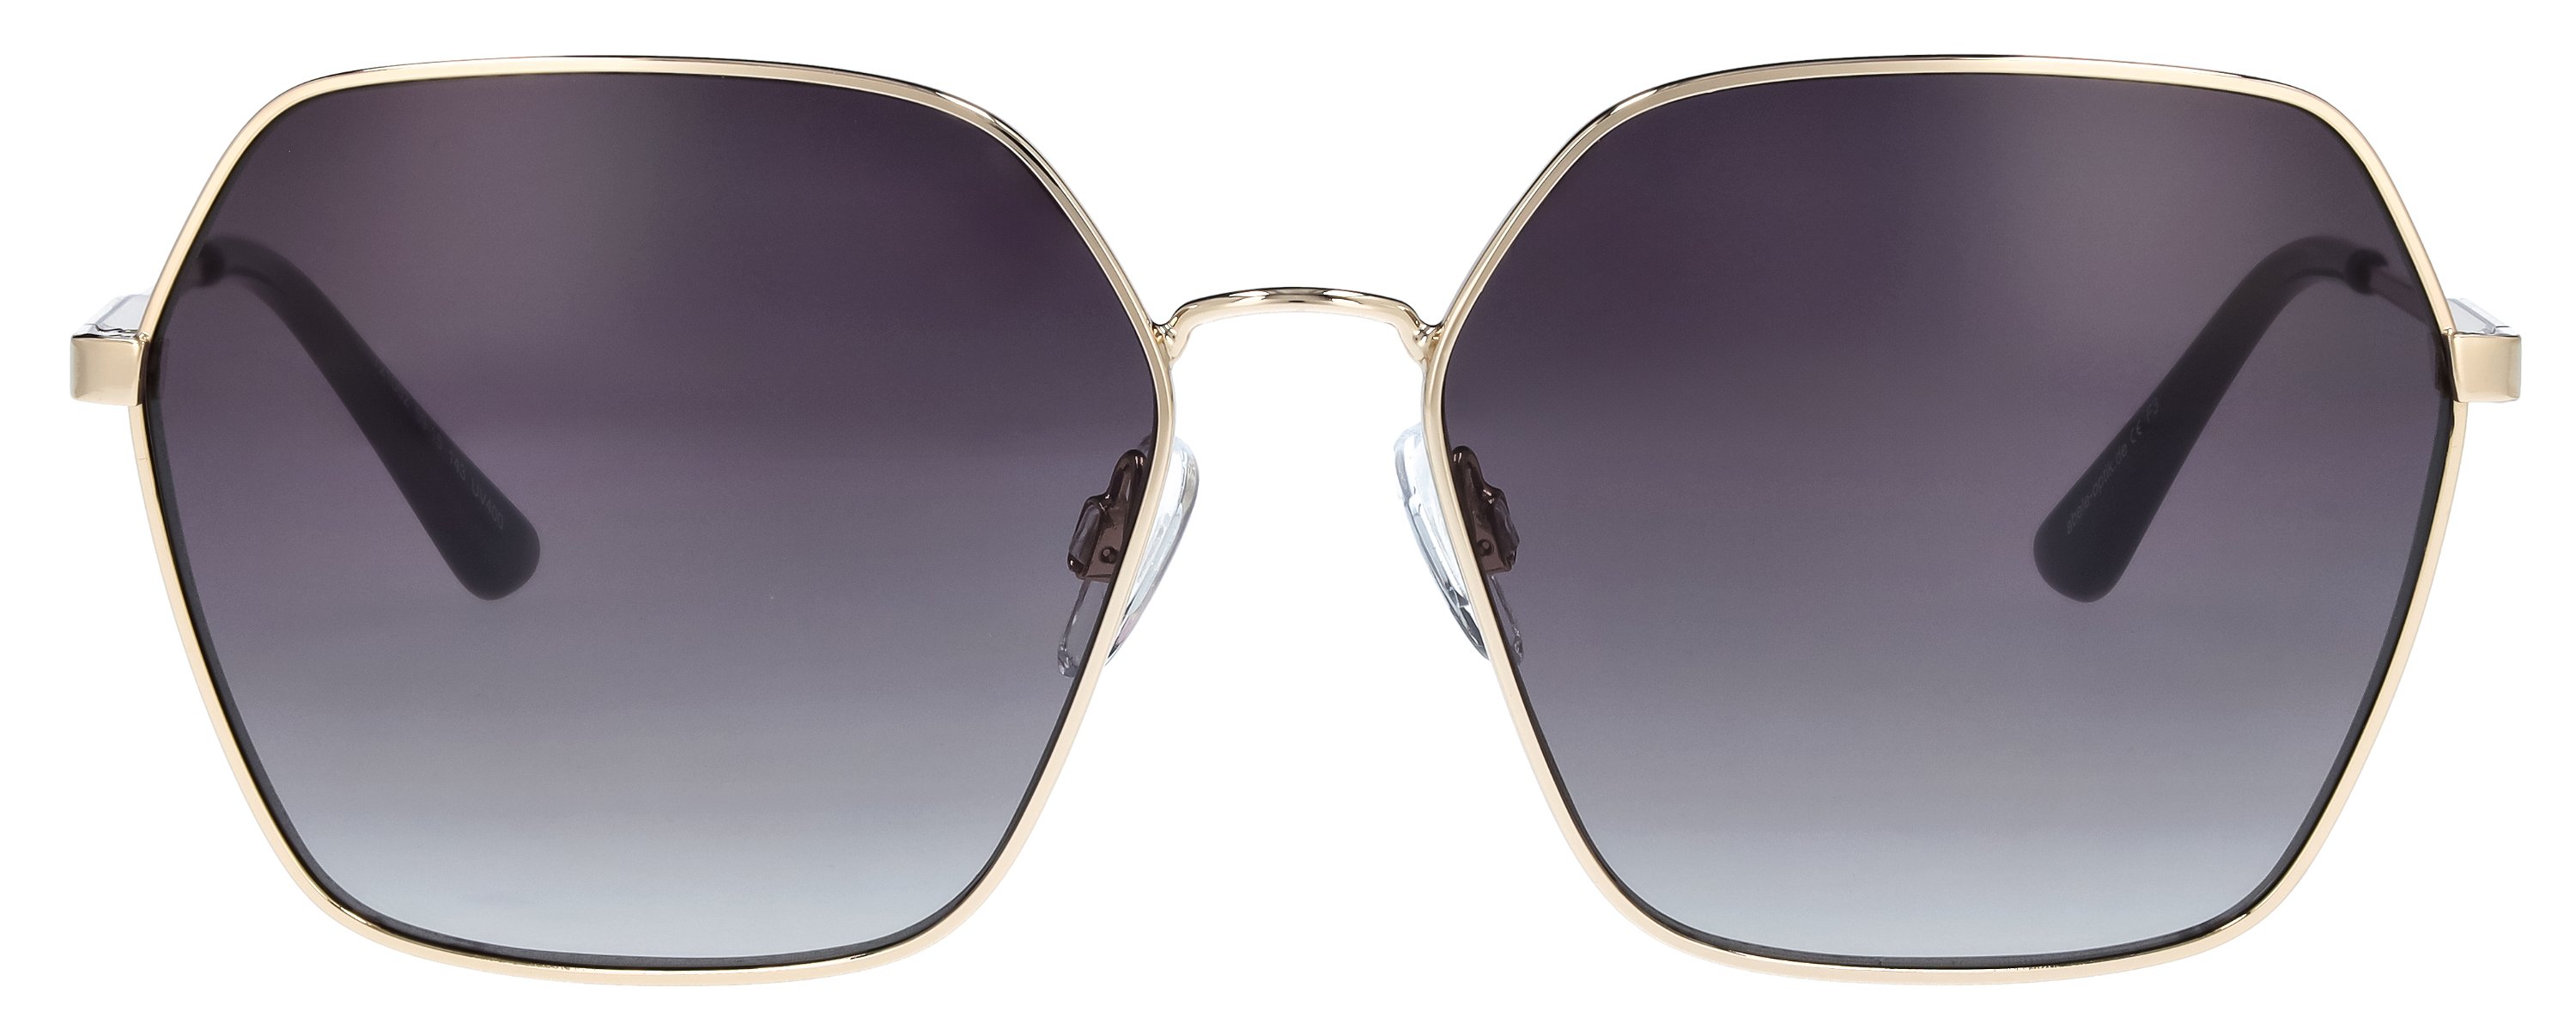 Das Bild zeigt die Sonnenbrille für  Damen  721062 in schwarz.